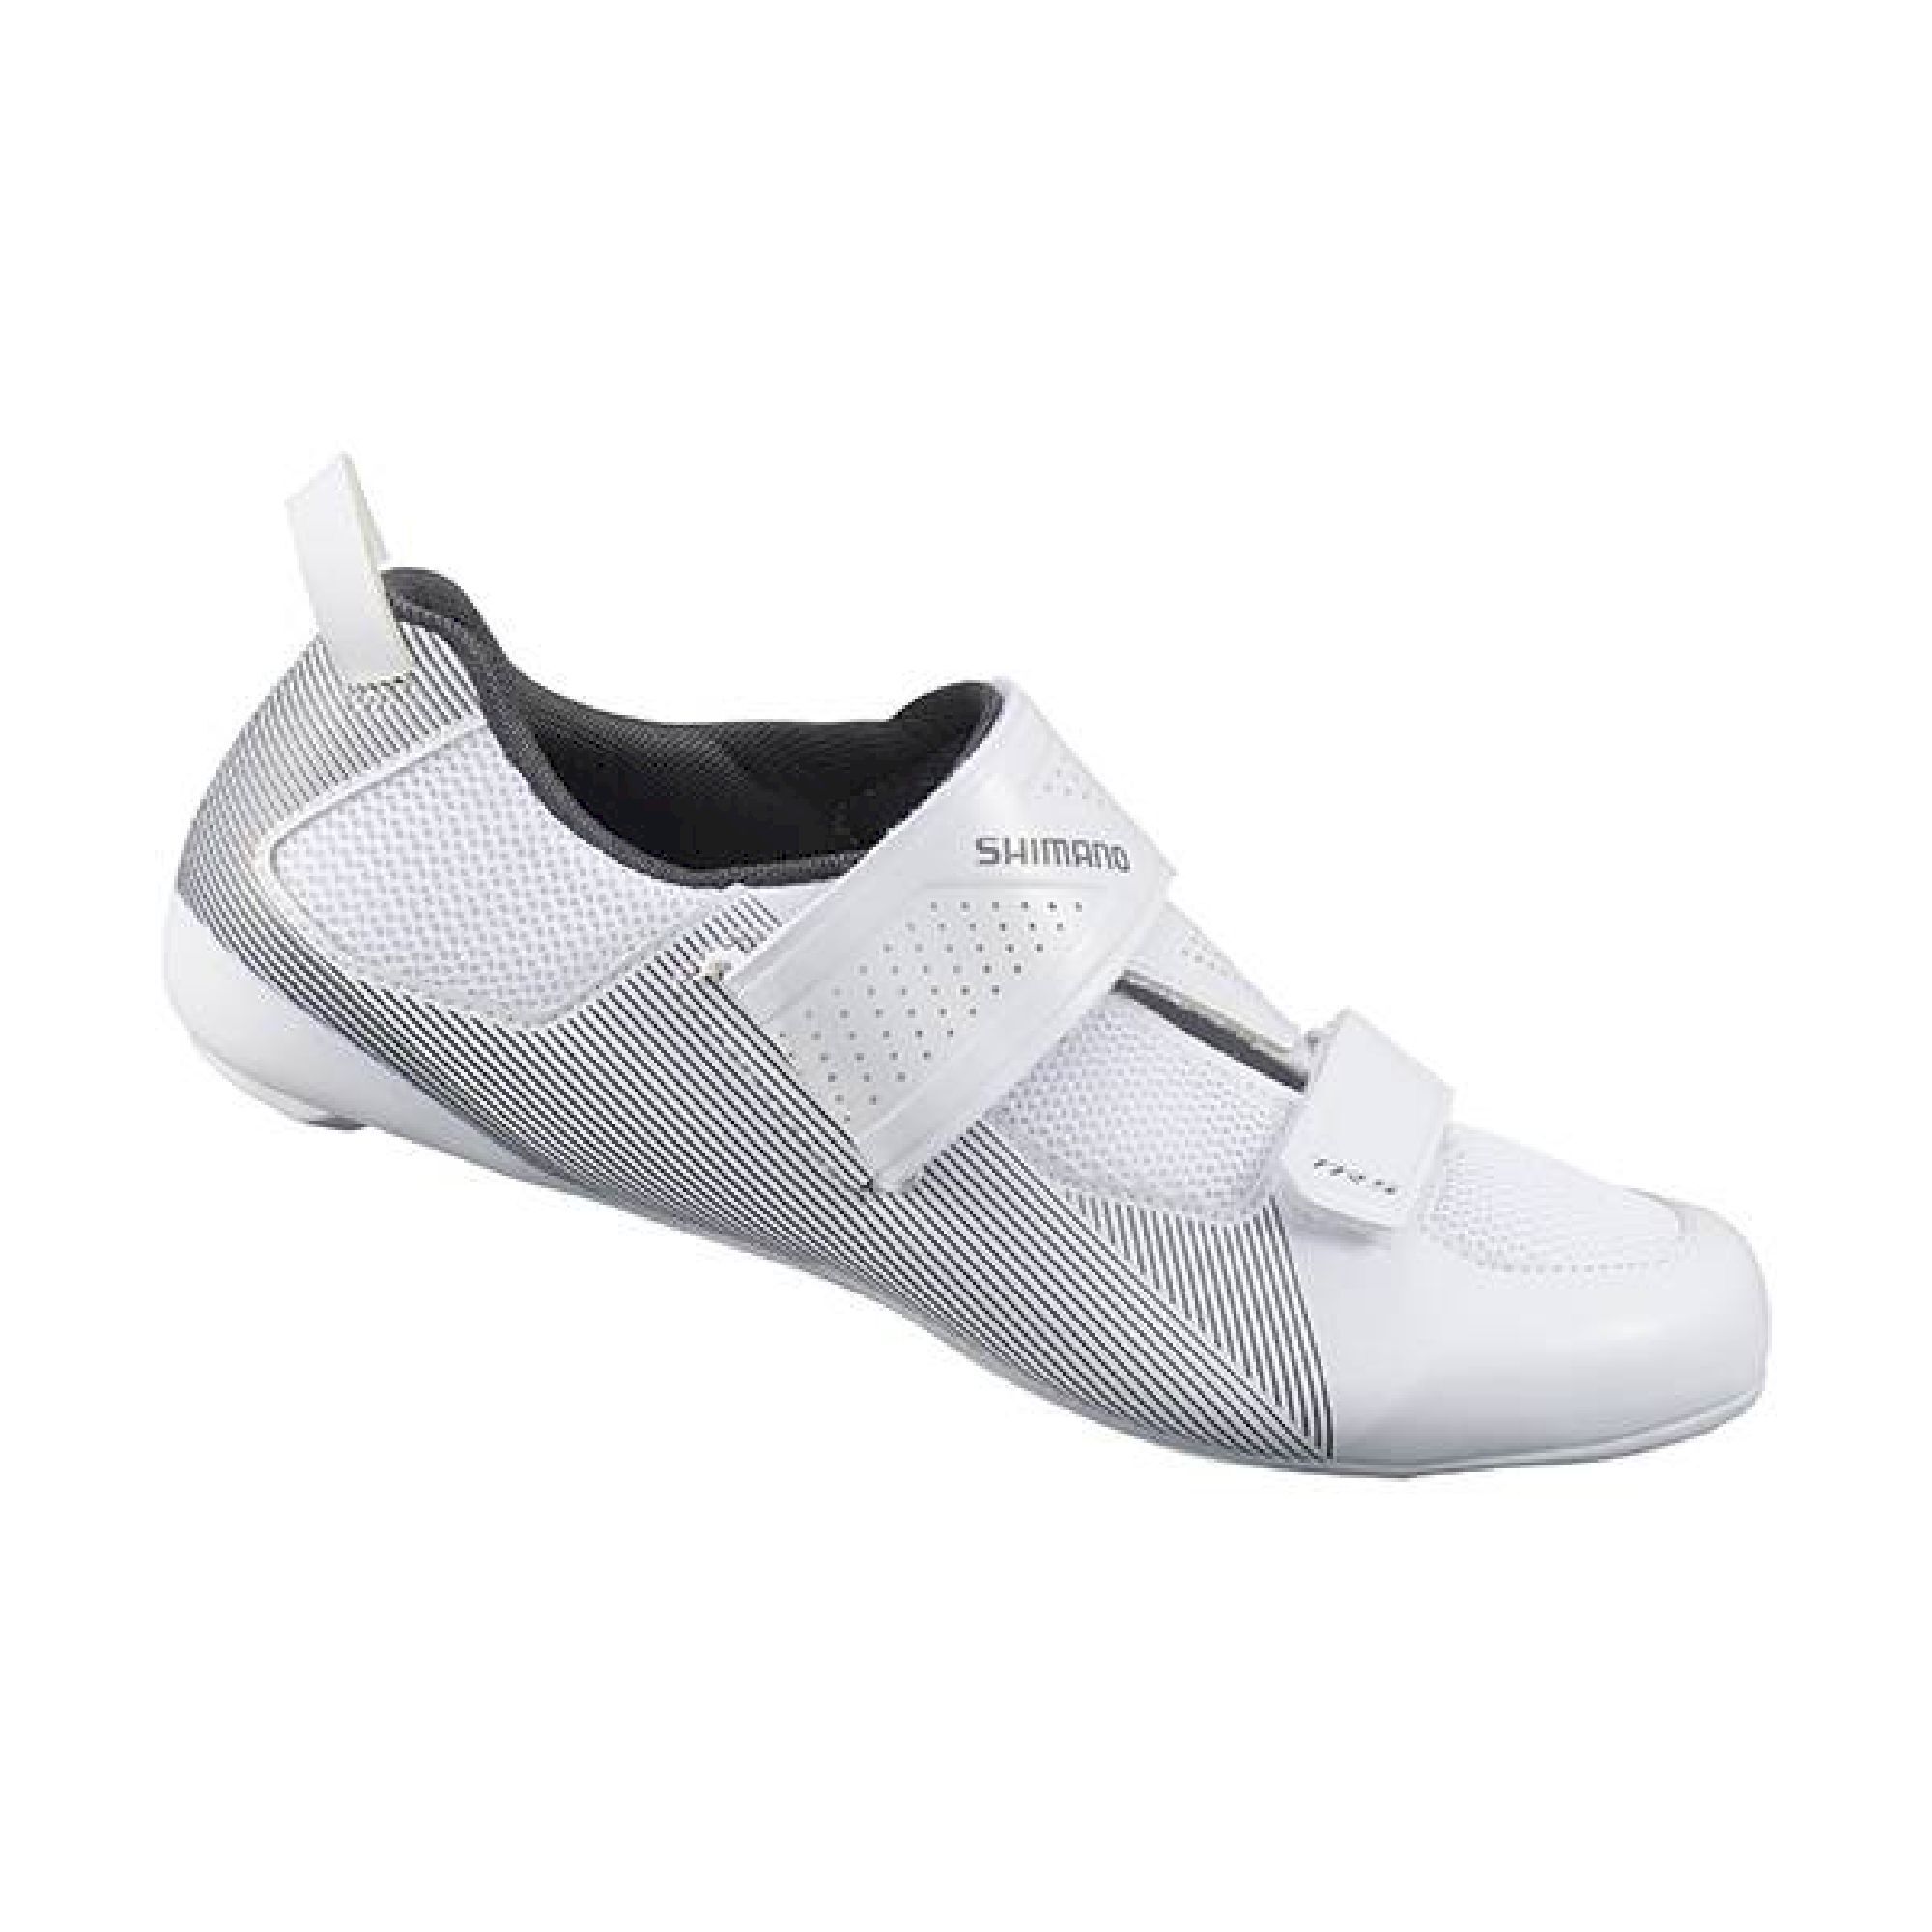 Shimano TR501 - Cycling shoes - Men's